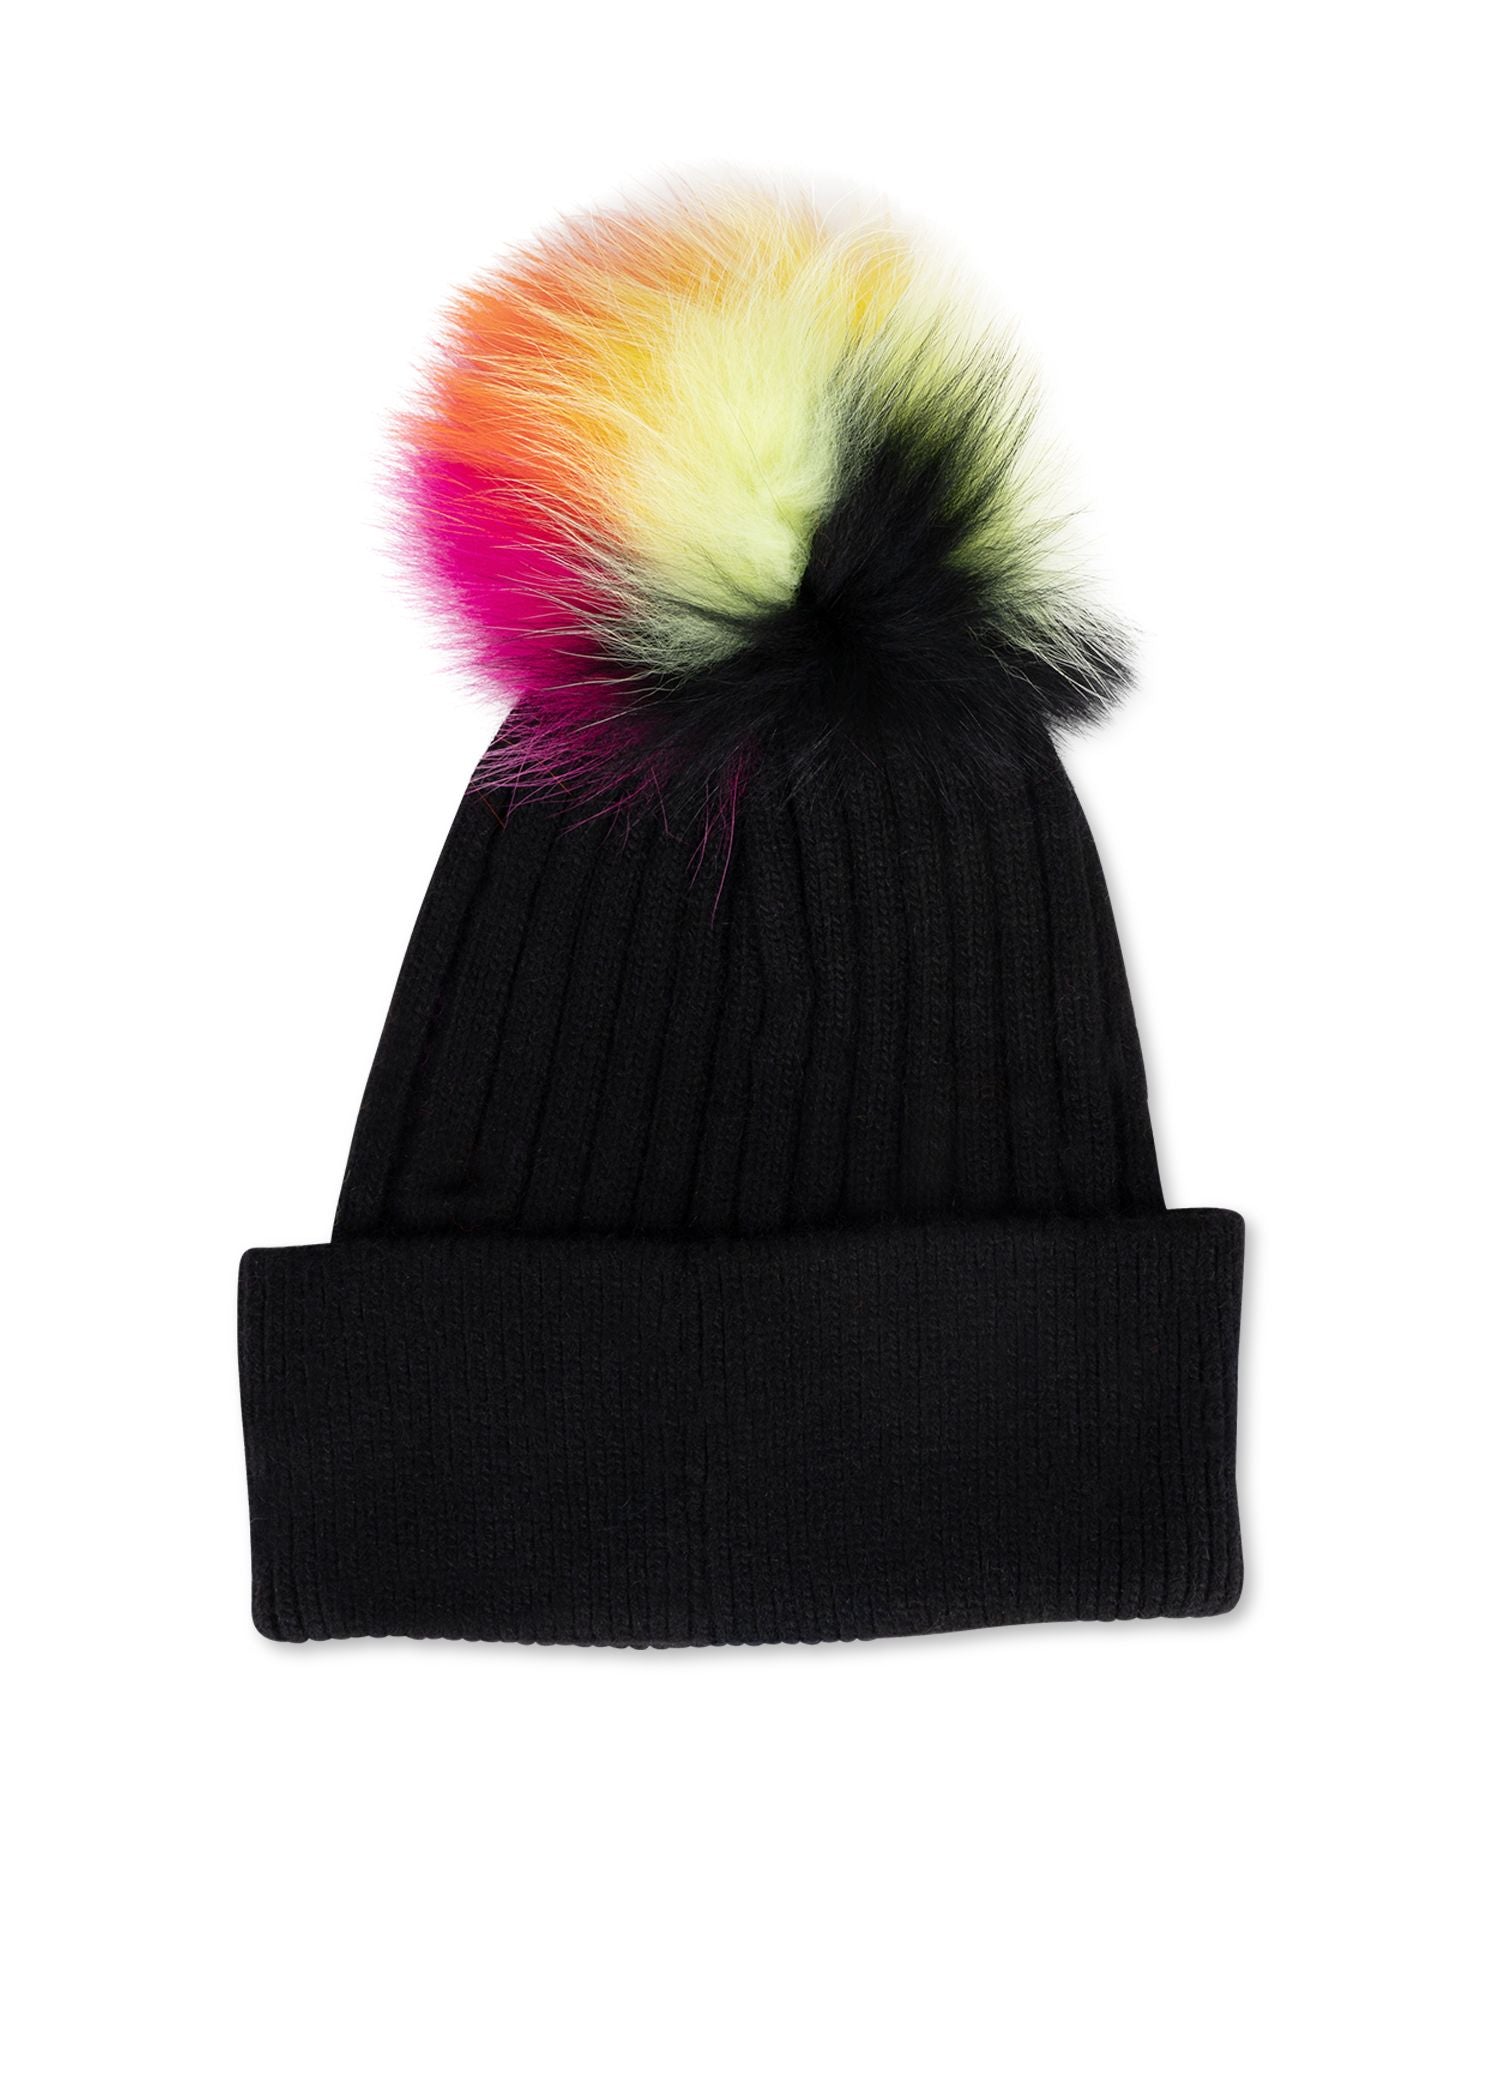 woodstock neon fox hat